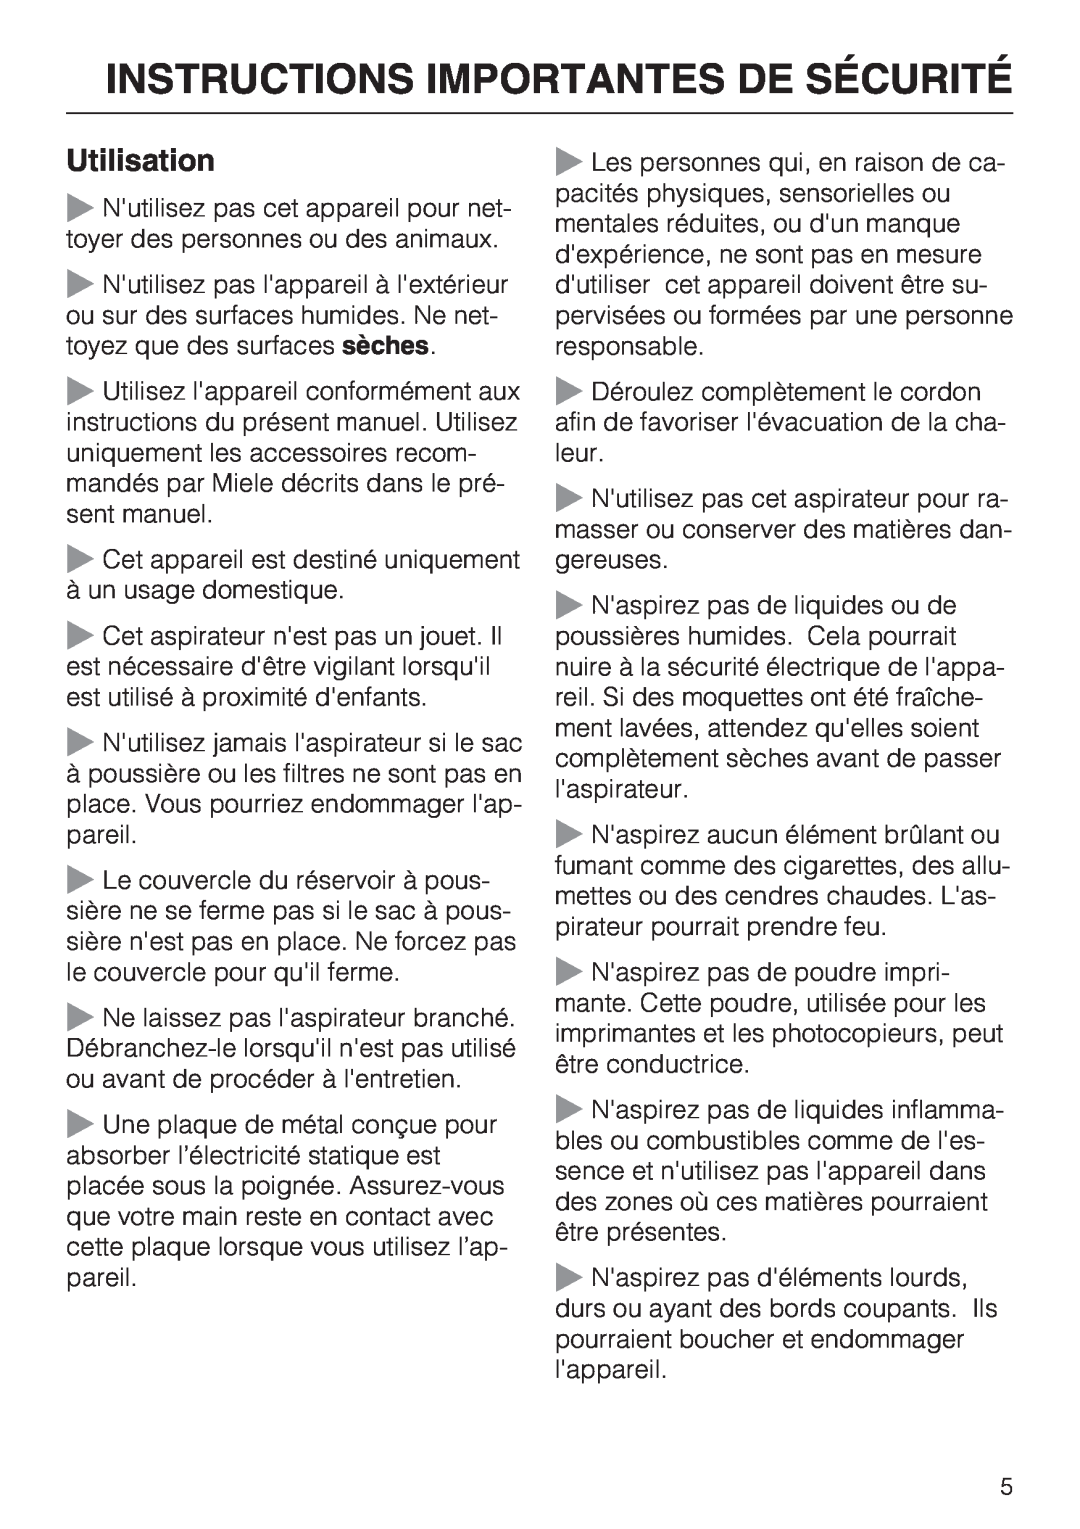 Miele S 2001 manual Utilisation, Instructions Importantes De Sécurité 